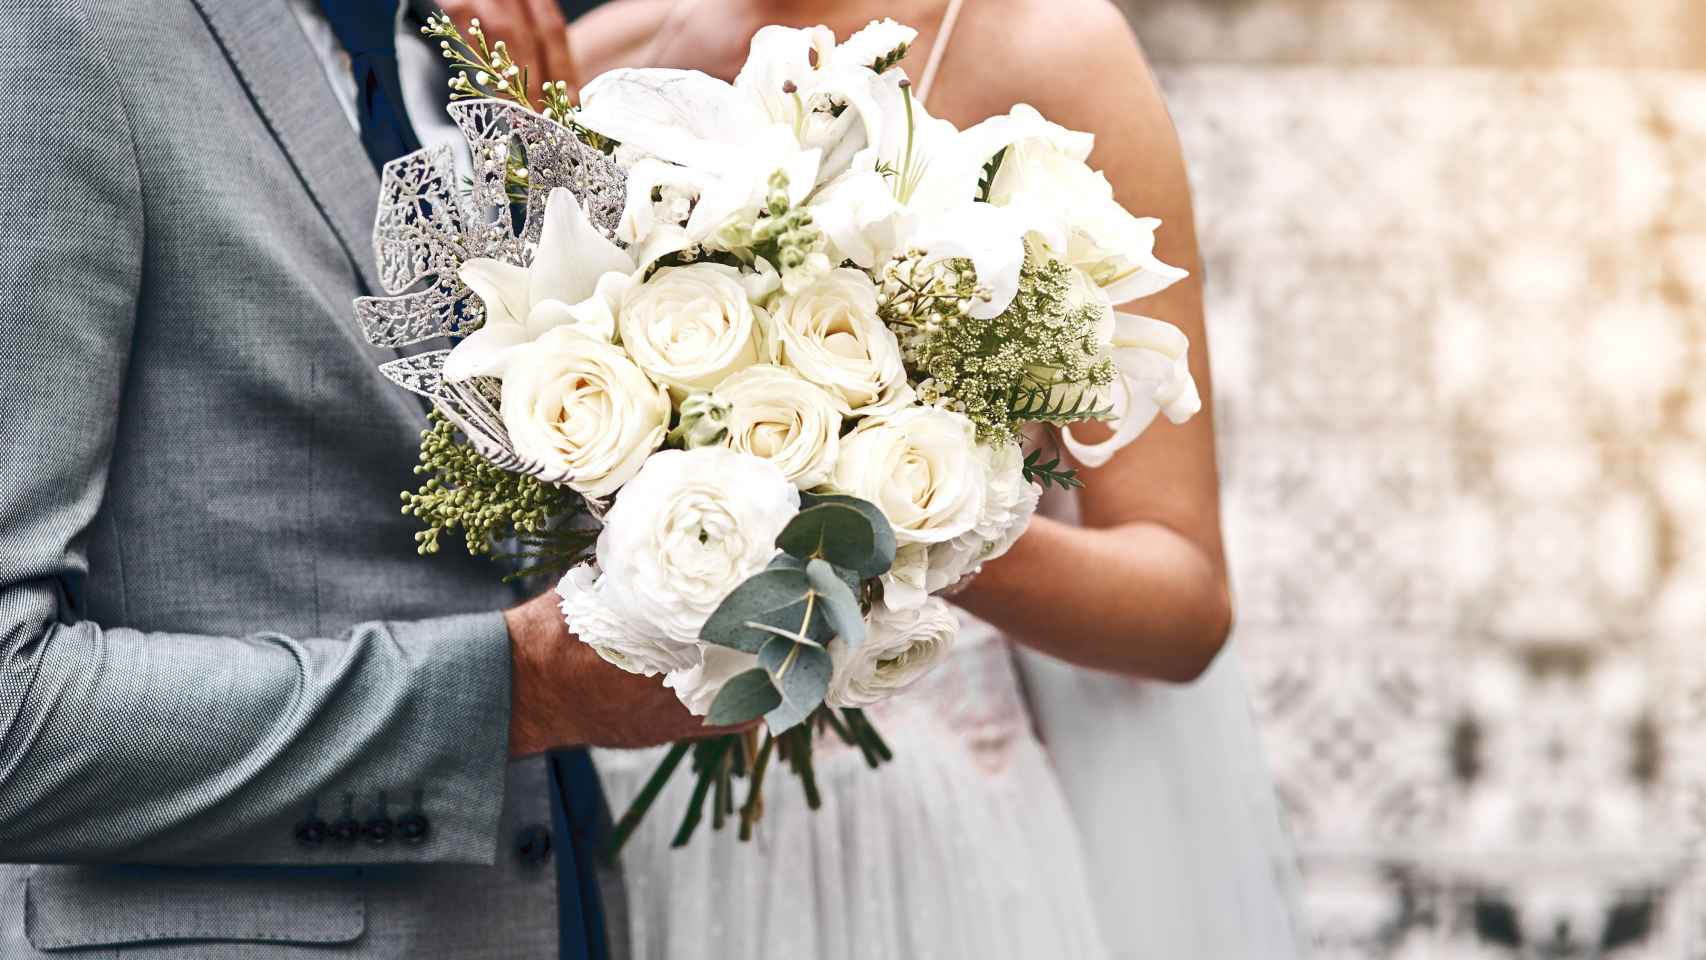 Regalo de boda – ¿qué regalar a los novios 